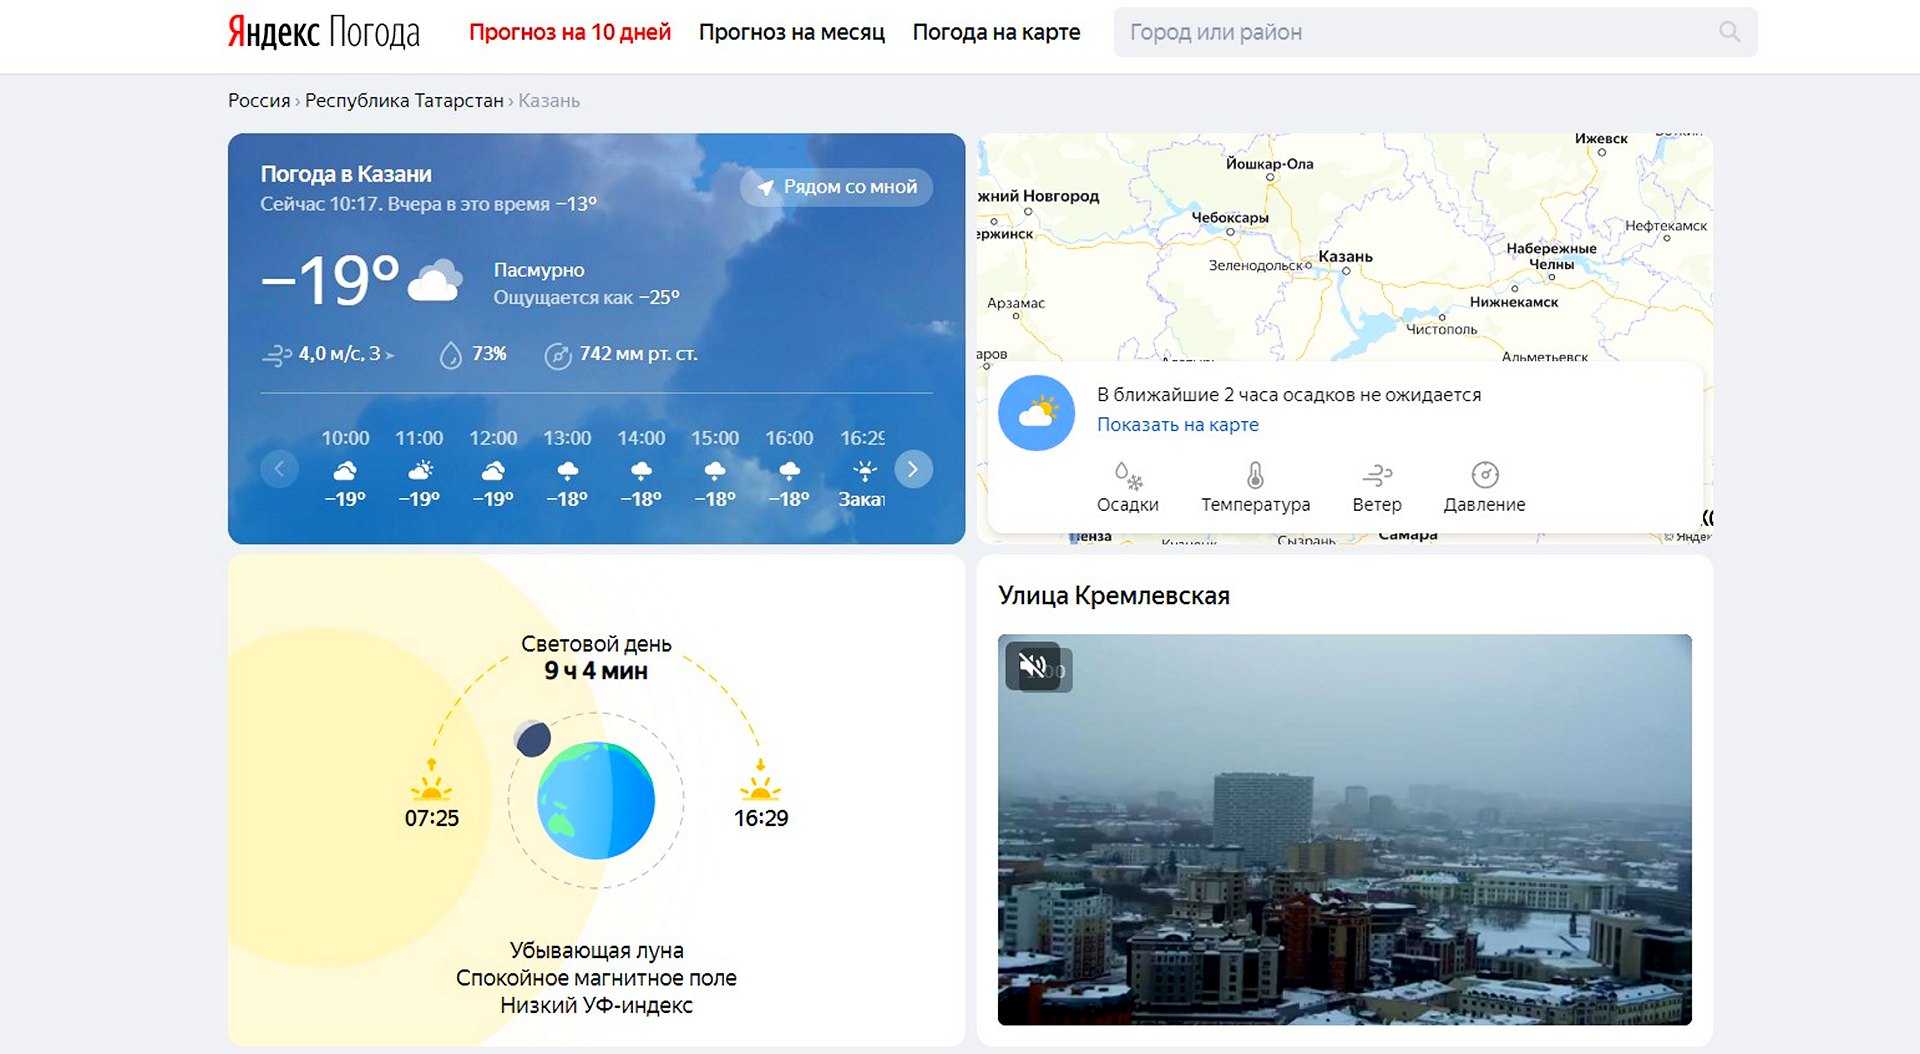 Какой сайт прогноза погоды самый точный. Яндекс погода. Прогноз погоды Яндекс. Яндекс погода карта. Яндекс.погода прогноз погоды.